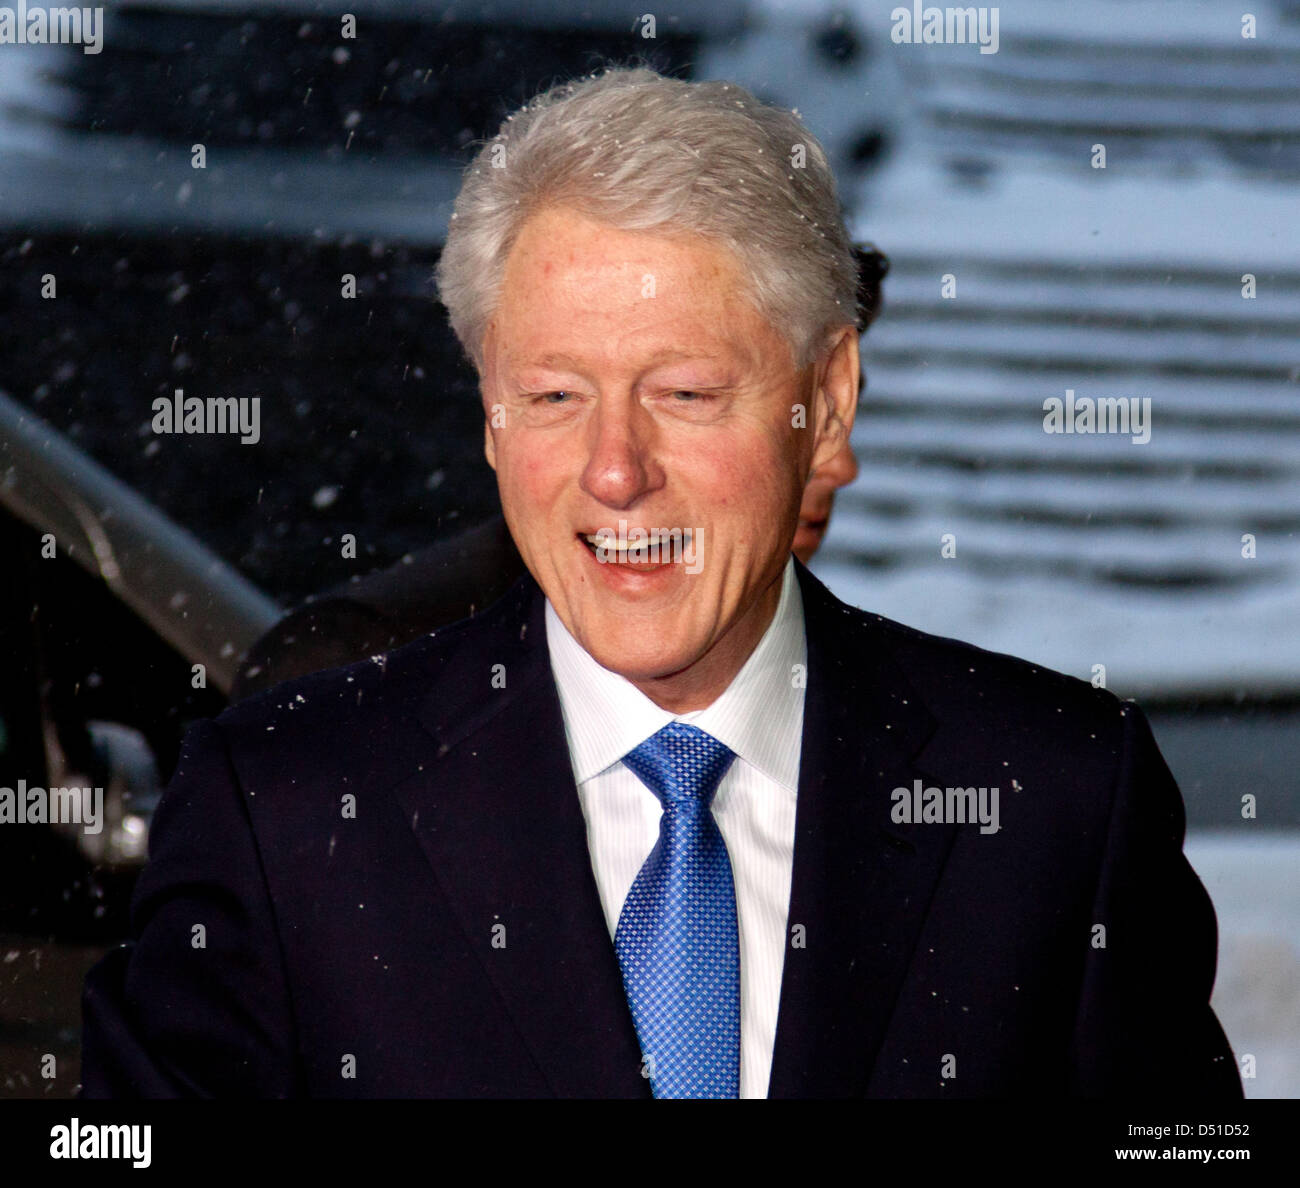 L'ancien président américain Bill Clinton arrive avec la délégation américaine au siège de la FIFA à Zurich, Suisse, 01 décembre 2010. Photo : Hubert Boesl Banque D'Images